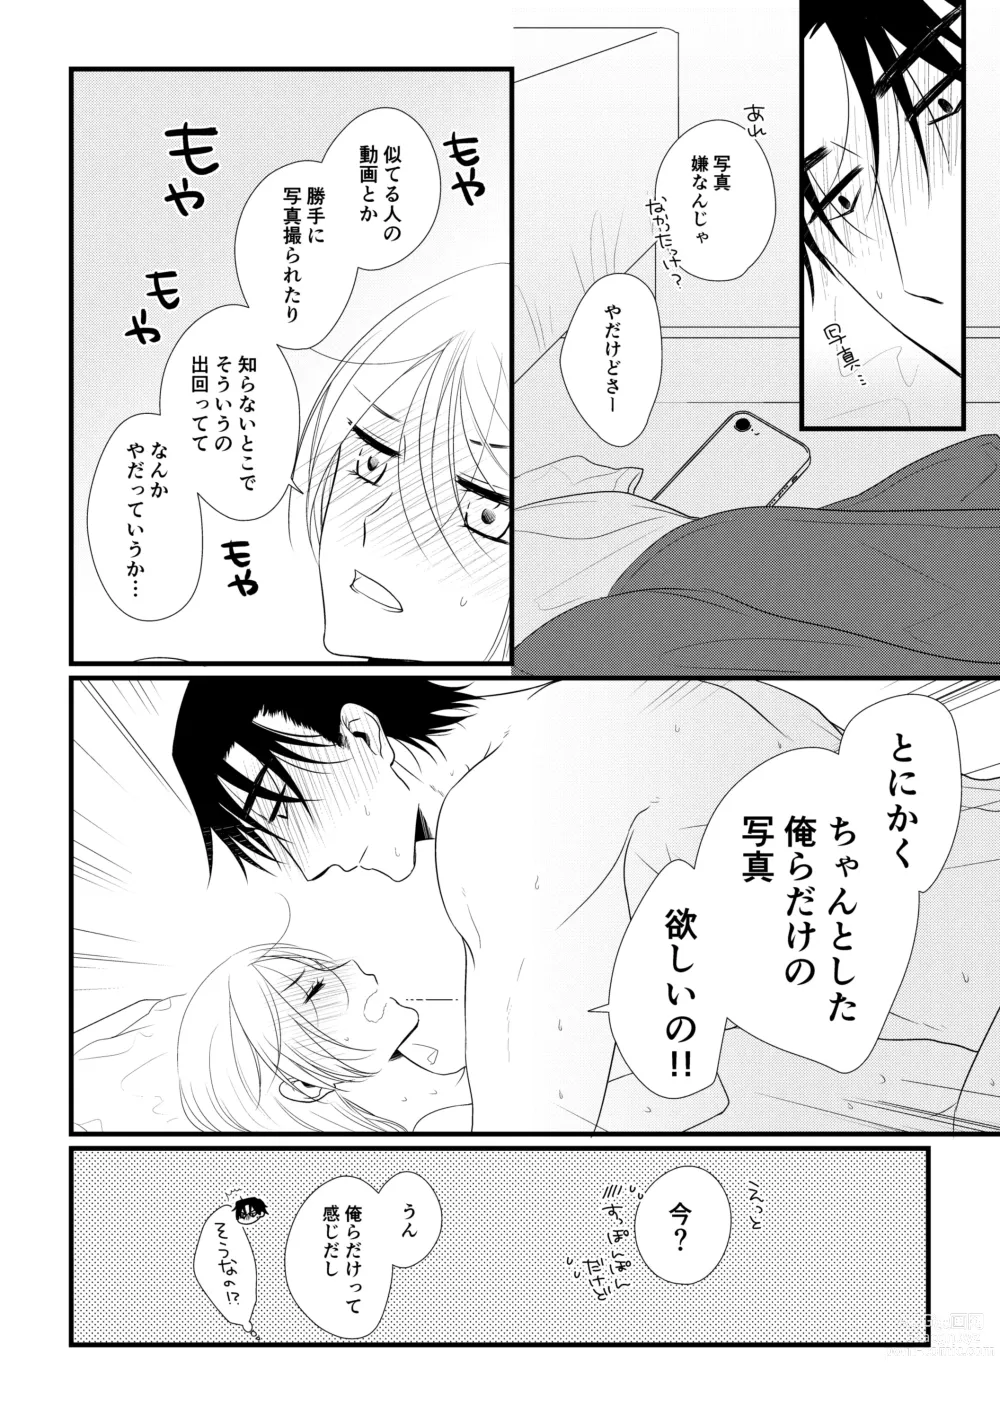 Page 107 of doujinshi Itsuki to Yuusei 2